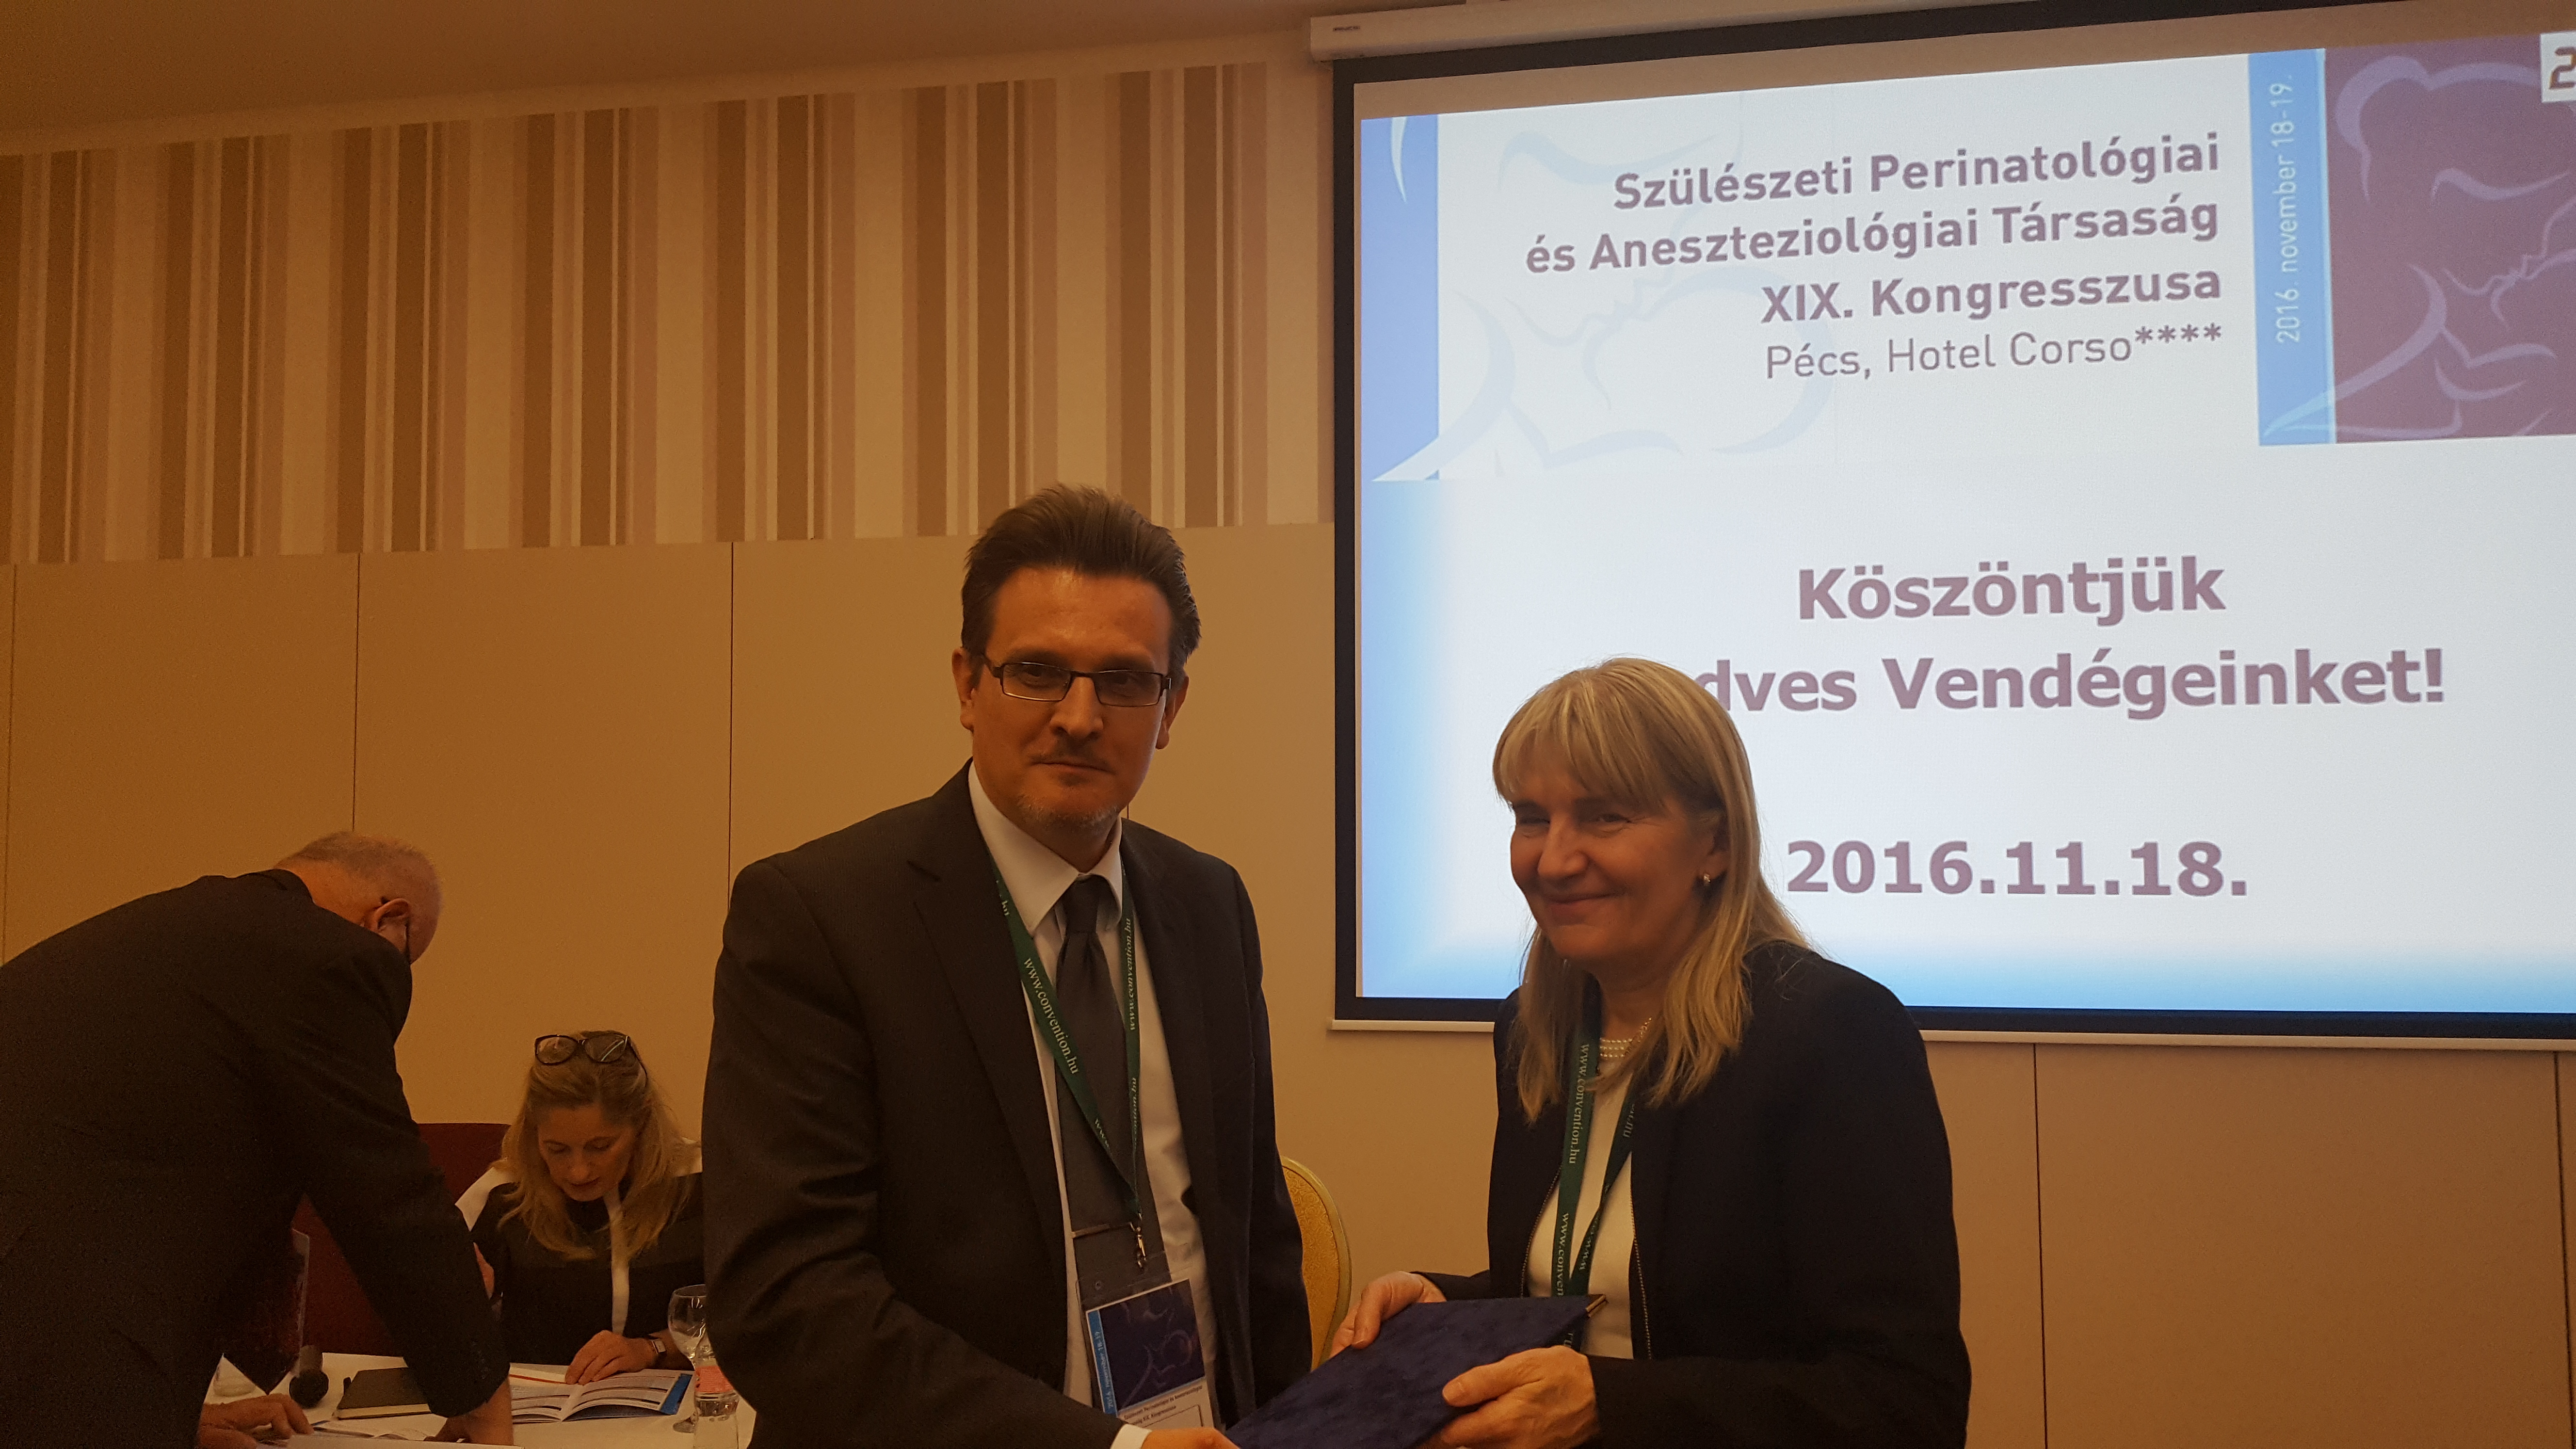 Prof.Dr.Orvos Hajnalka Virginia Apgar díjazott, Dr.Beke Artúr SZPAT szülész elnöke